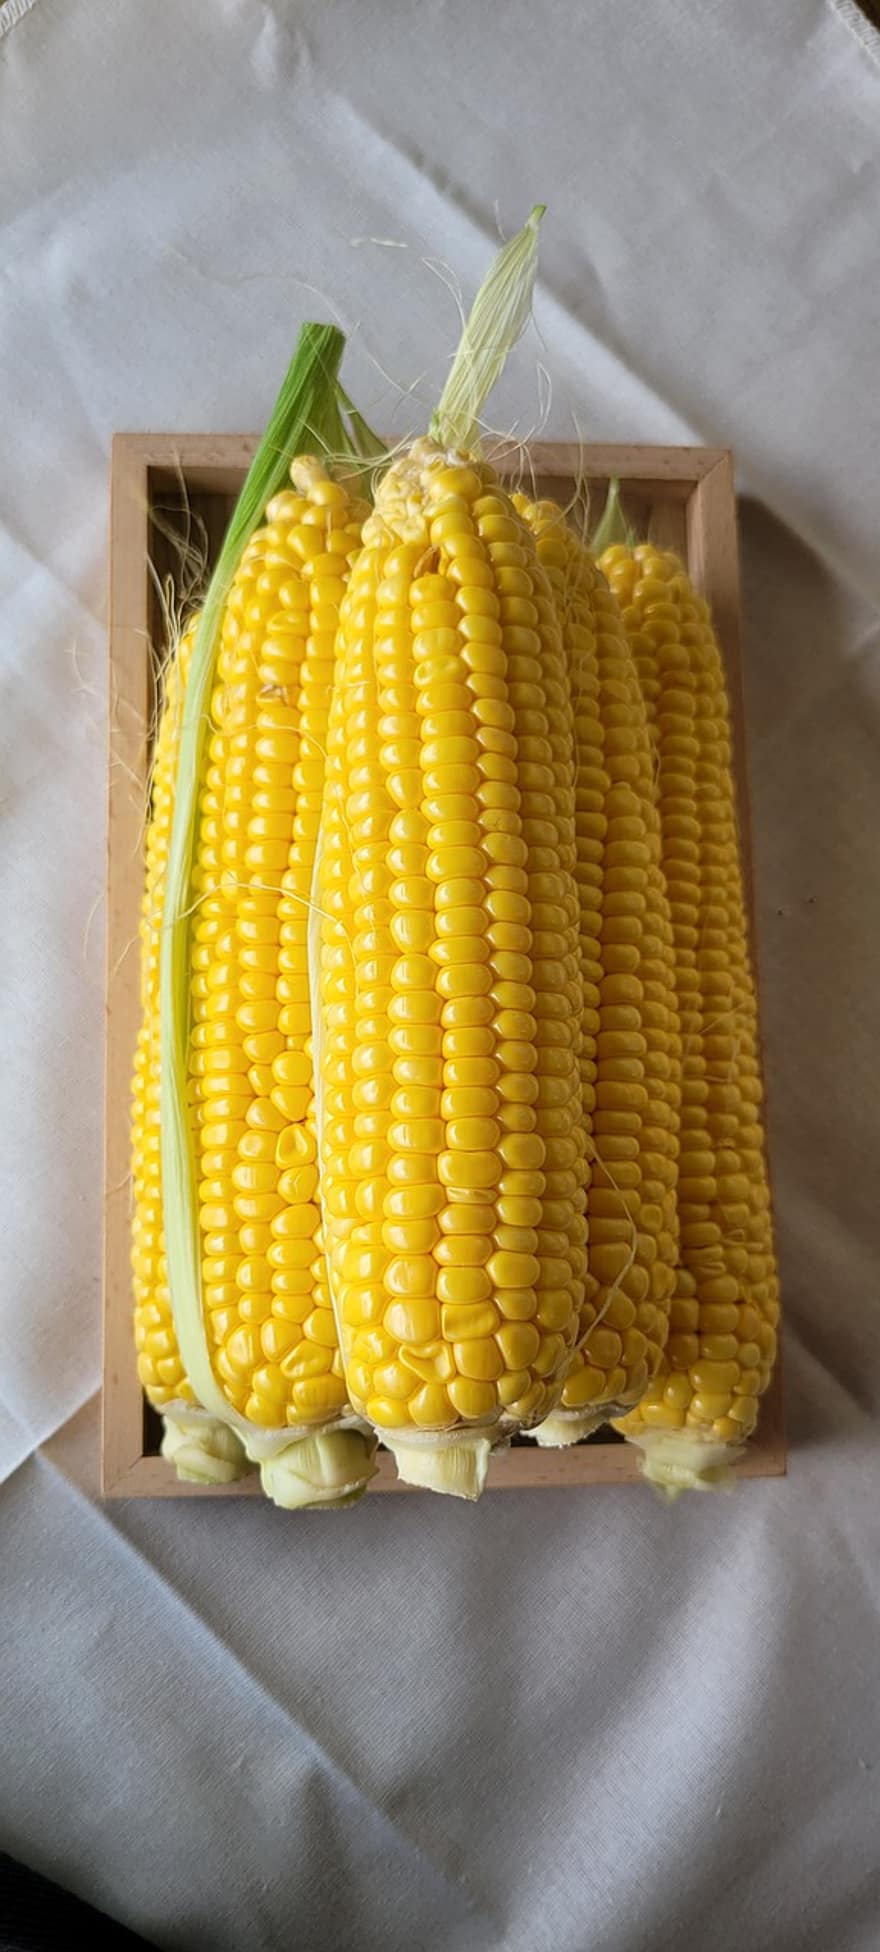 Кукурудза за секунду, в секунду, Солодка кукурудза, жовта кукурудза, кут, сільське господарство, природи, сільськогосподарська продукція, кукурудза, овочі, Агрі